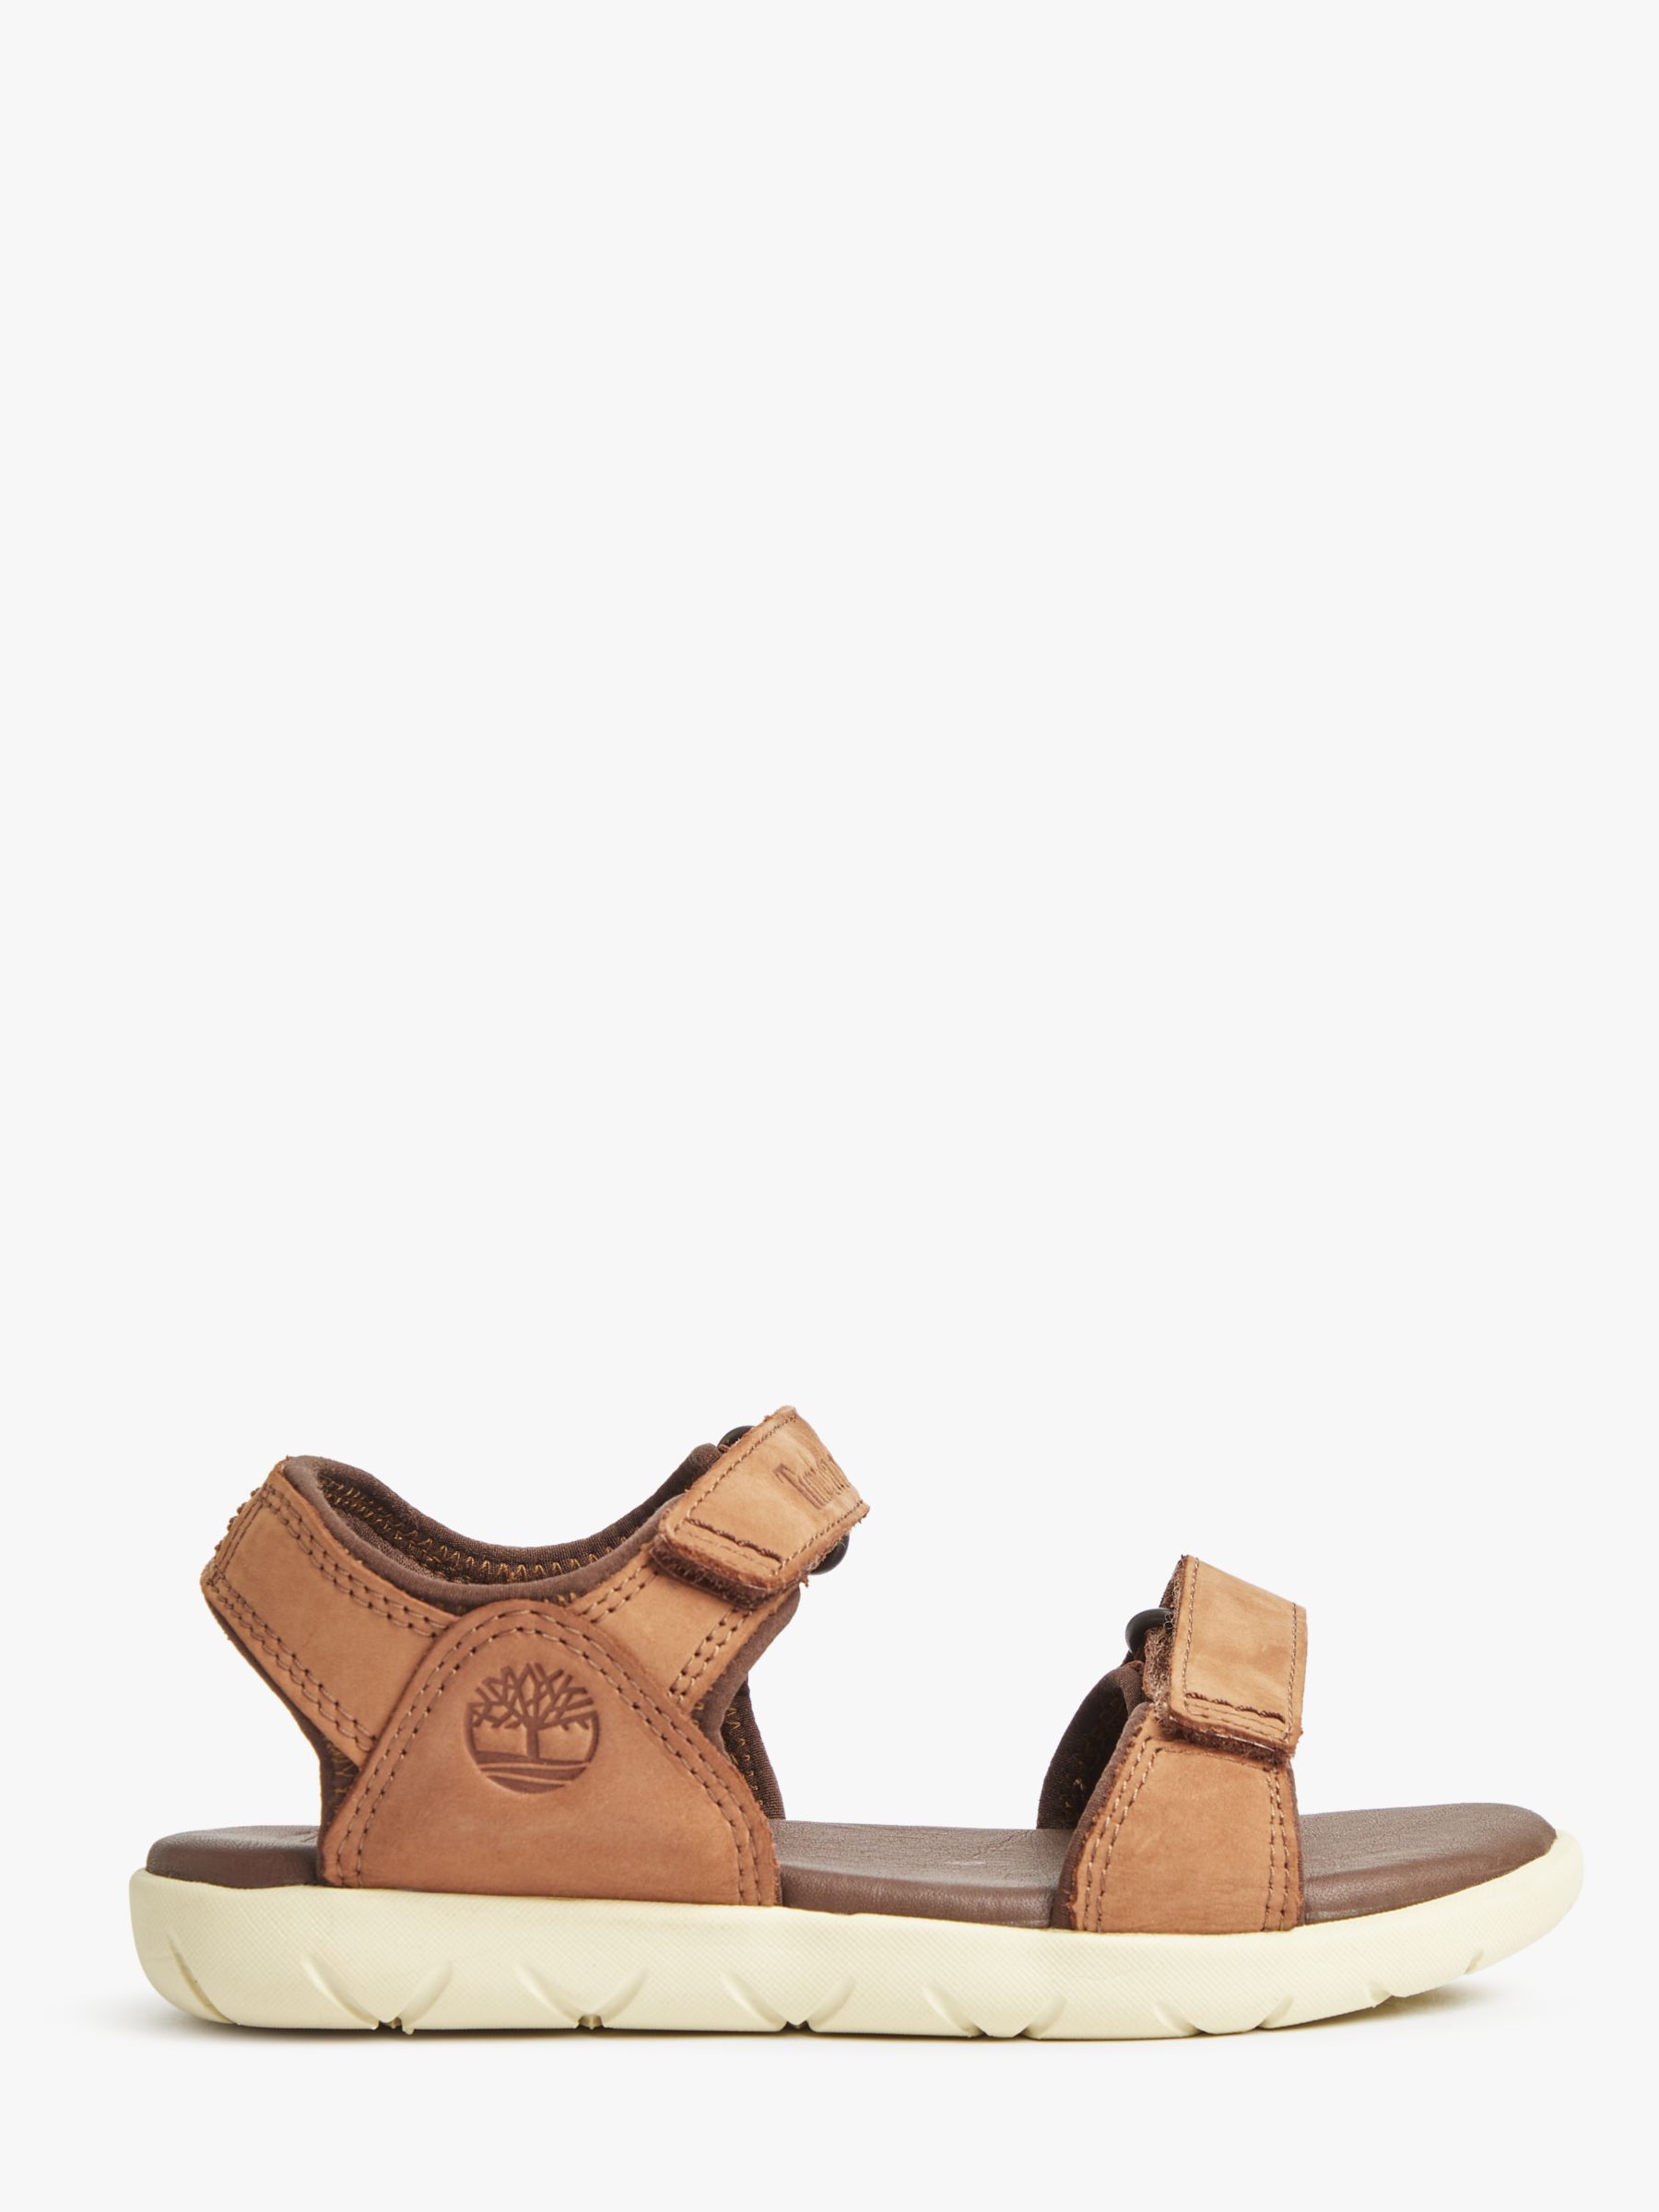 timberland tan sandals